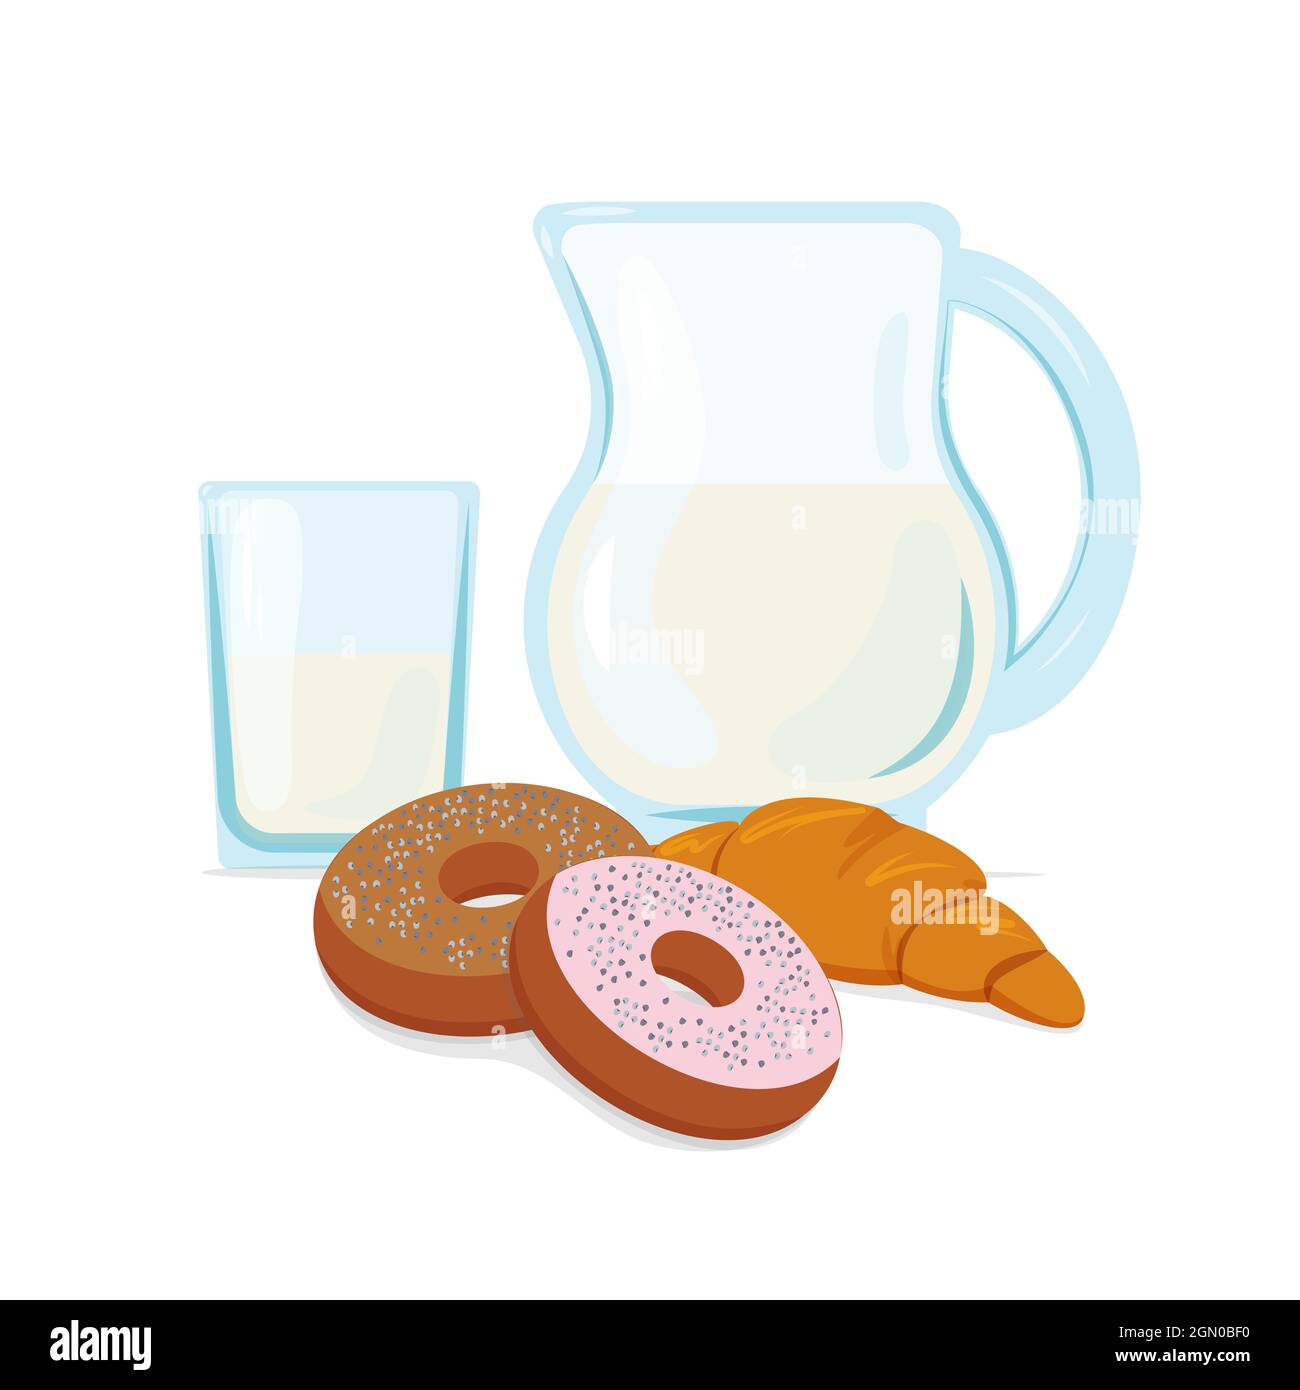 Gesundes und nahrhaftes Frühstück, Essen, Vektor-Illustration im flachen Stil Stock Vektor